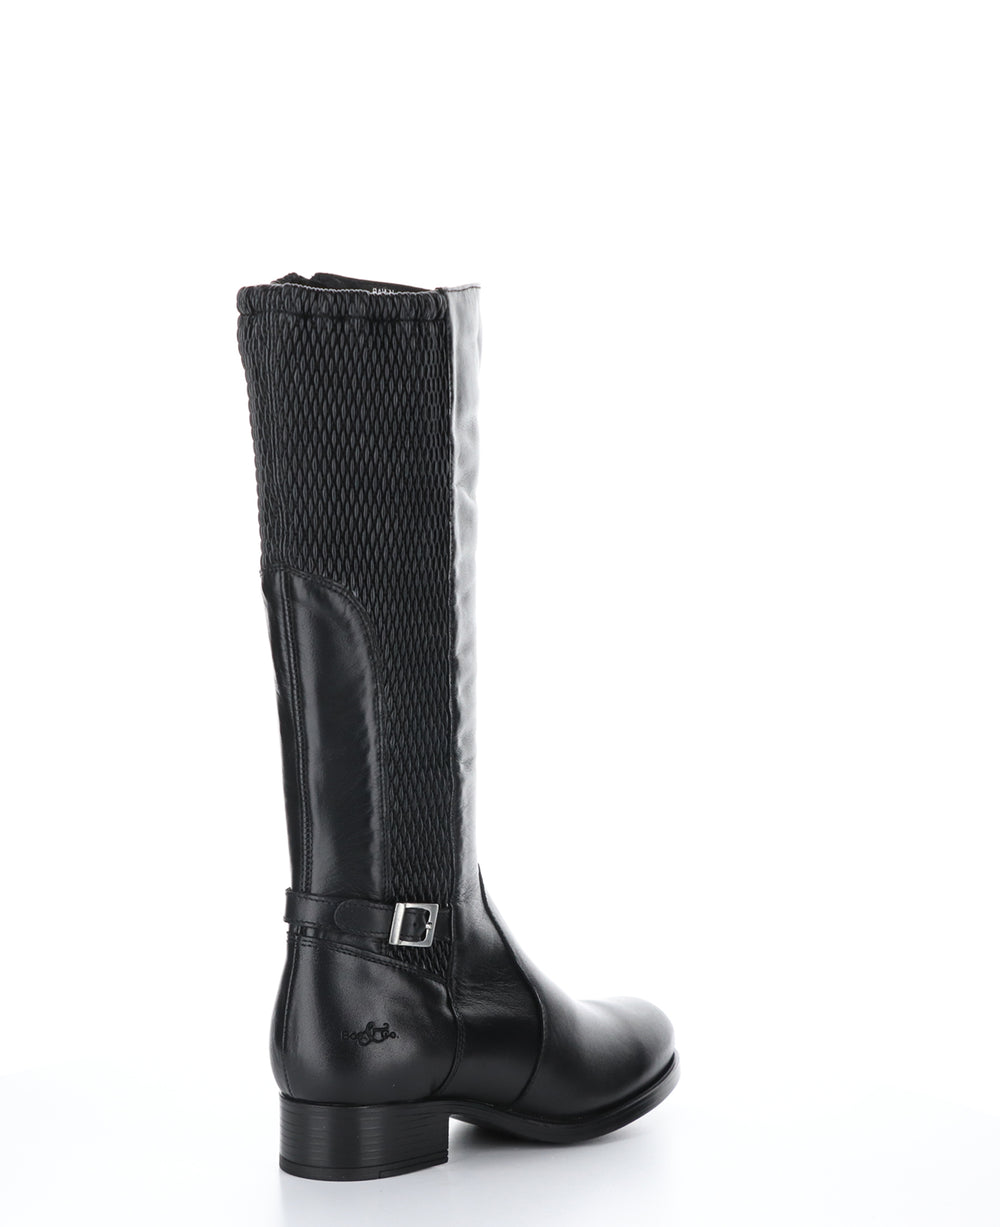 BAWN Black Zip Up Boots|BAWN Bottes avec Fermeture Zippée in Noir